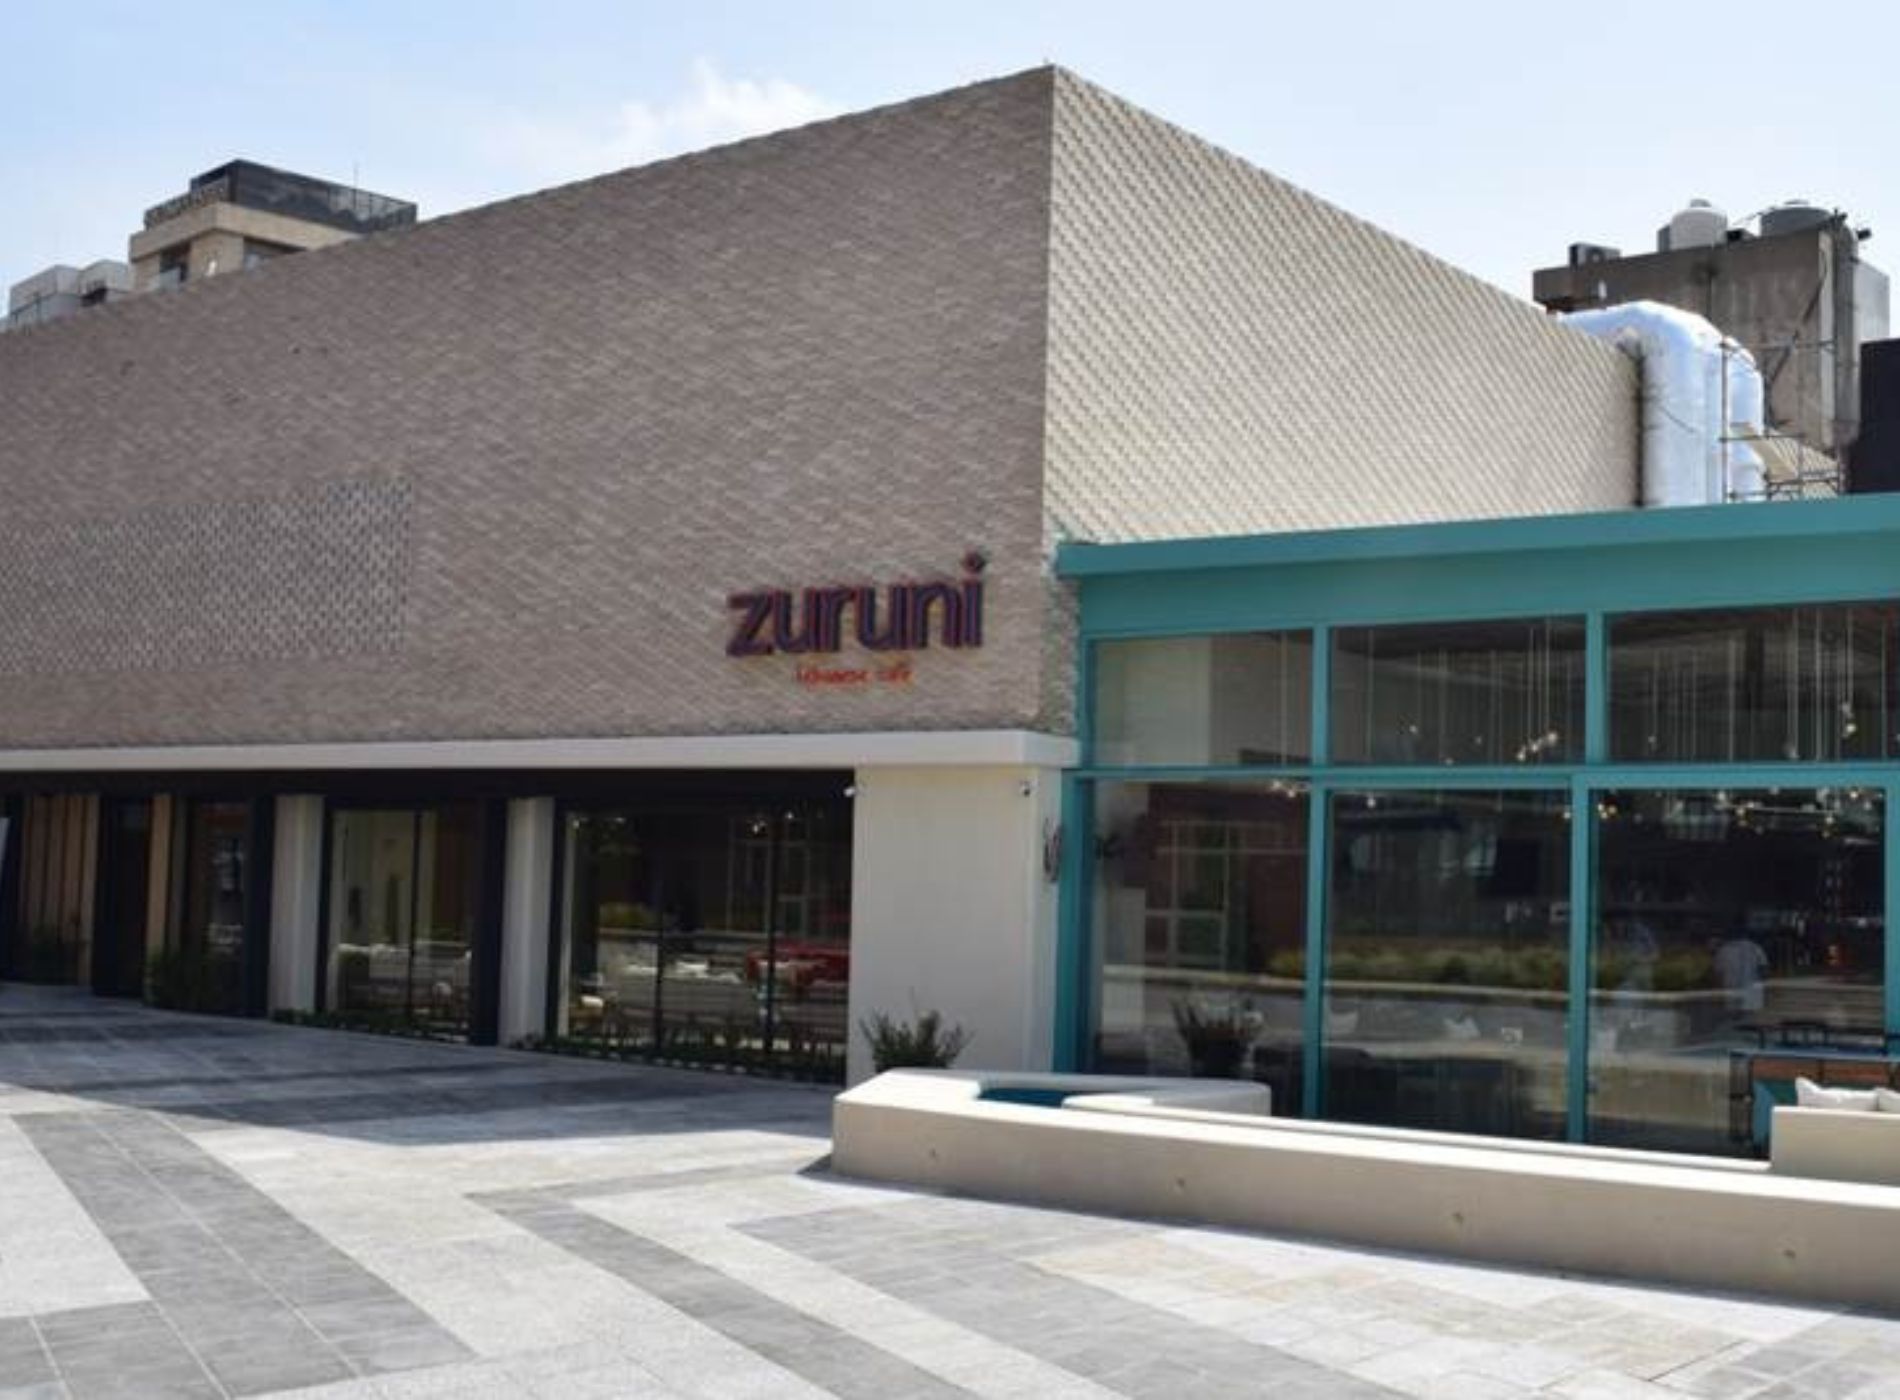 Zuruni Restaurant – Jal El Dib